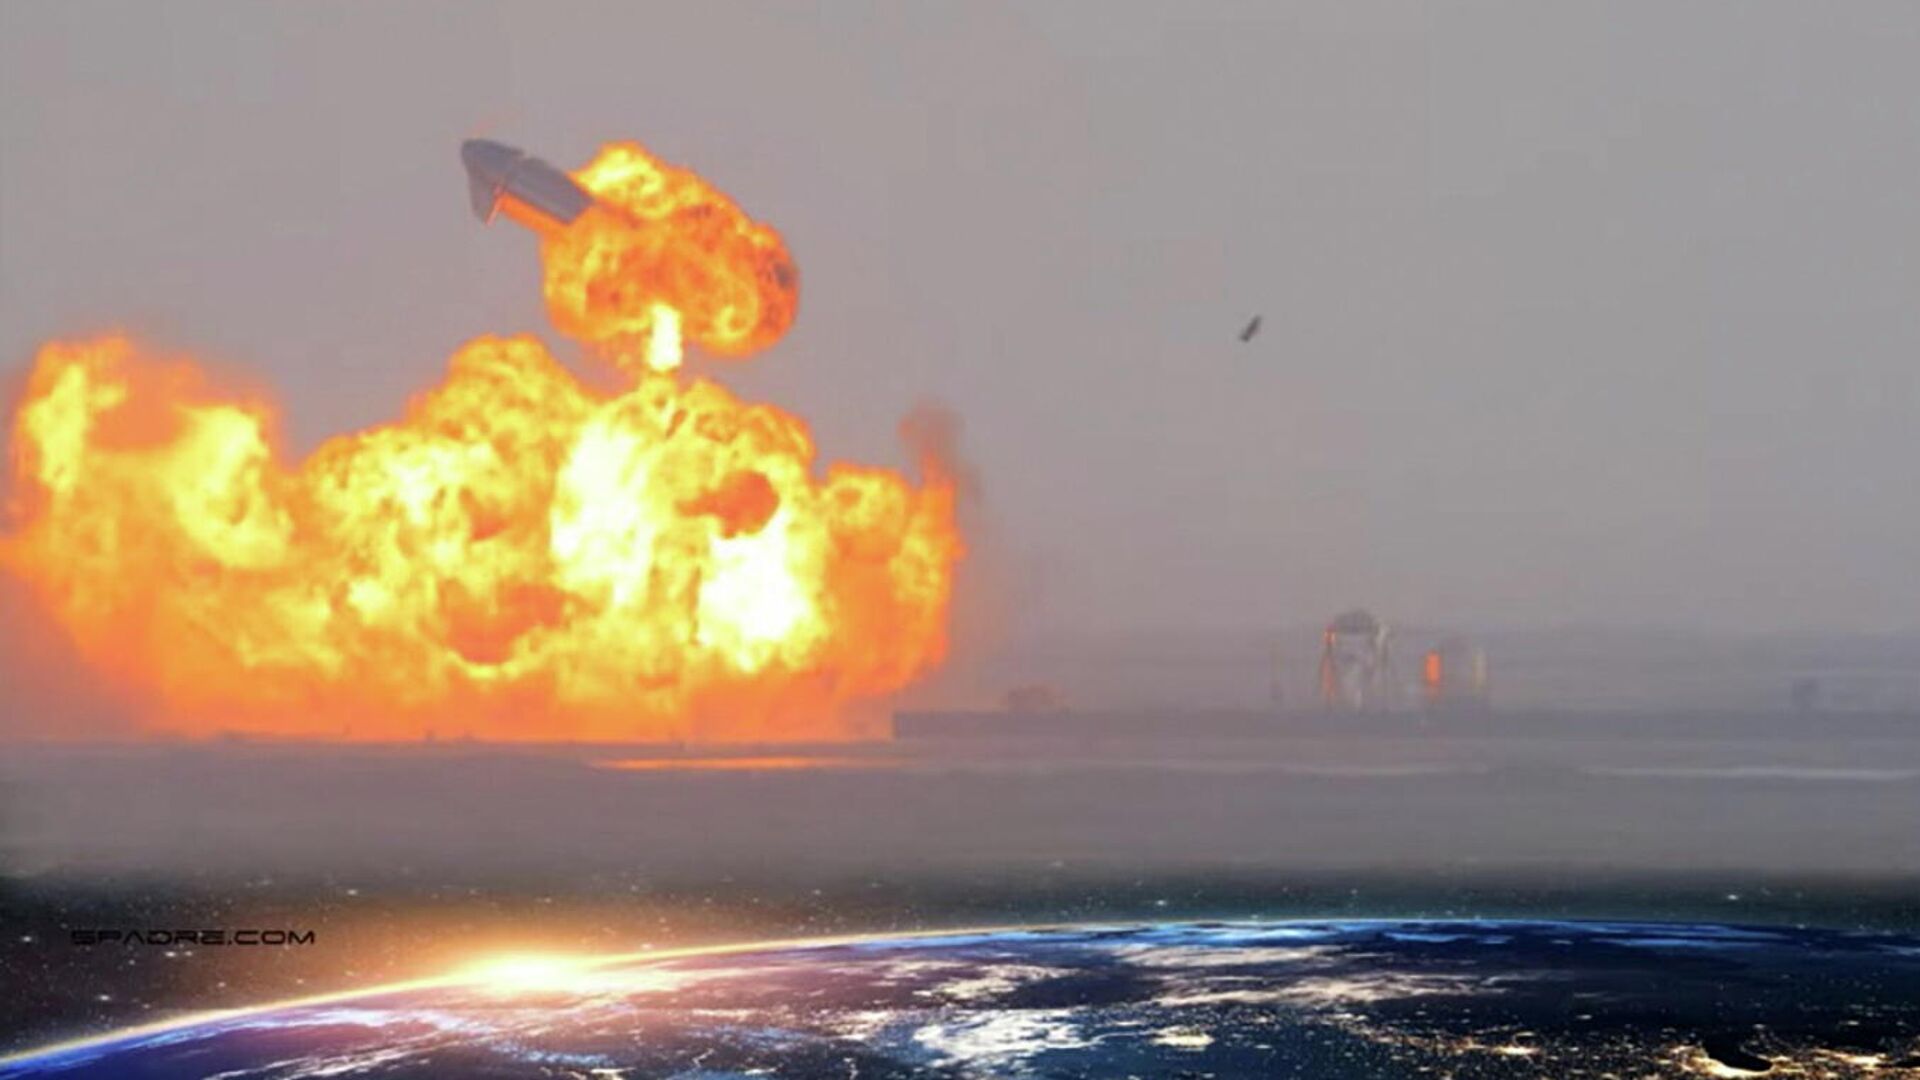 Прототип корабля Starship SN10 компании SpaceX взорвался после посадки - РИА Новости, 1920, 30.03.2021